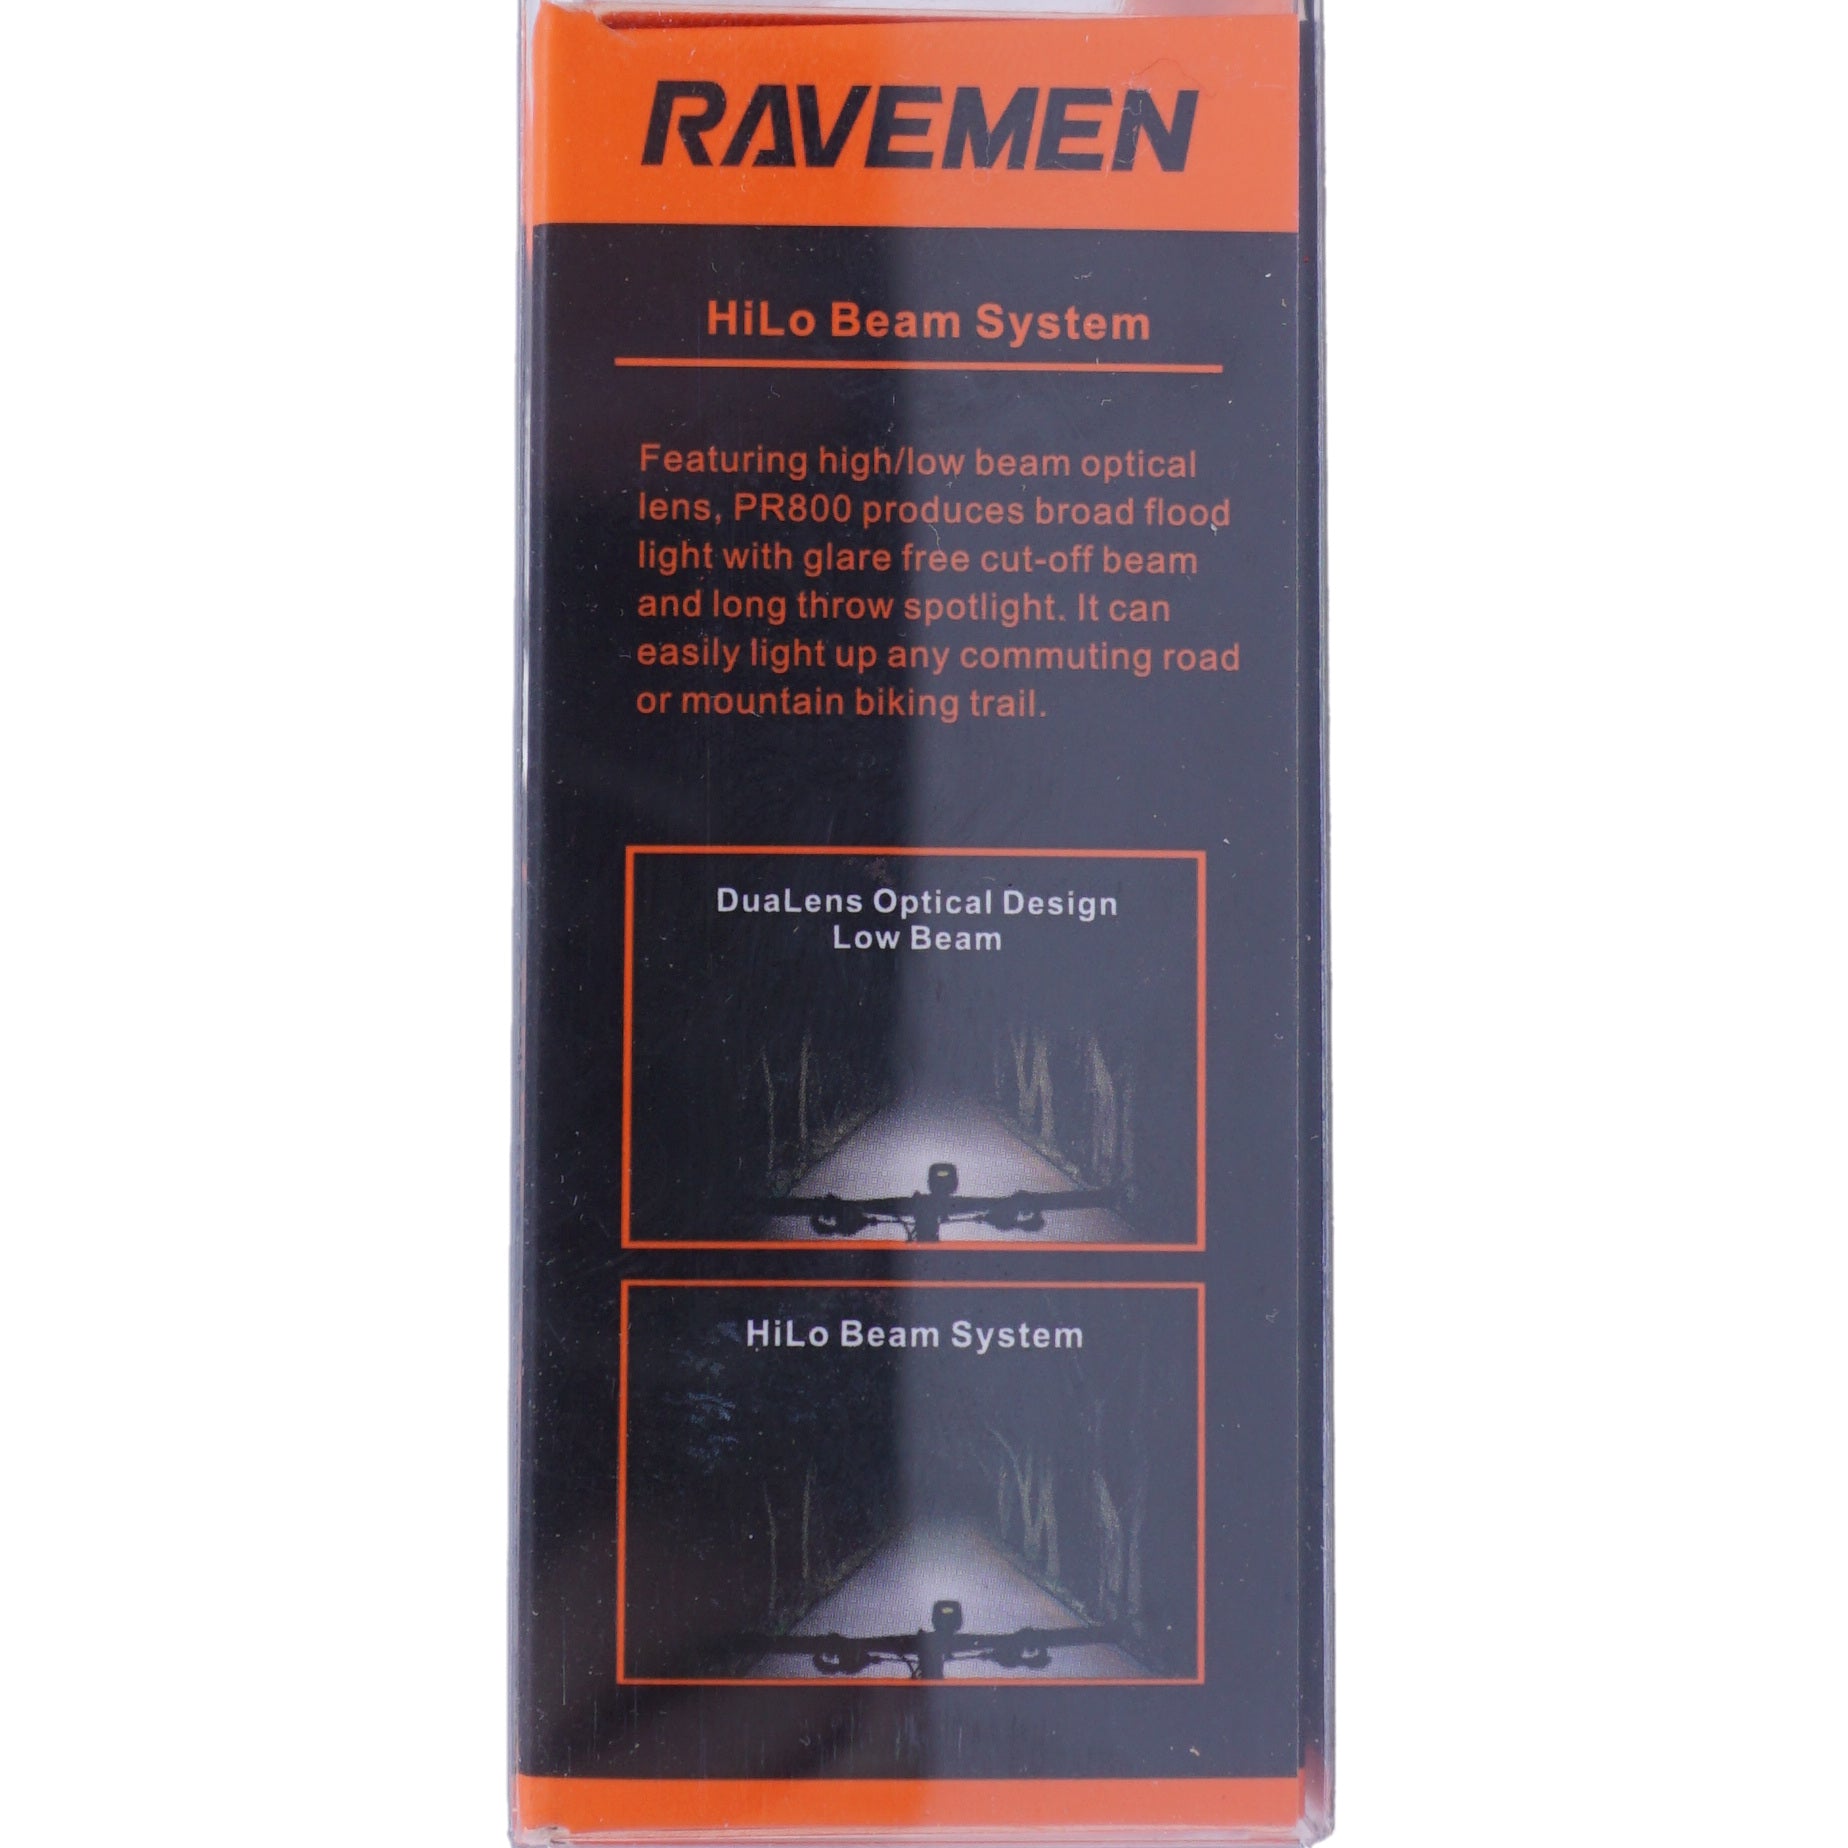 Ravemen PR800 400/800 Lumen USB Dual Headlight W/ Remote - The Bikesmiths